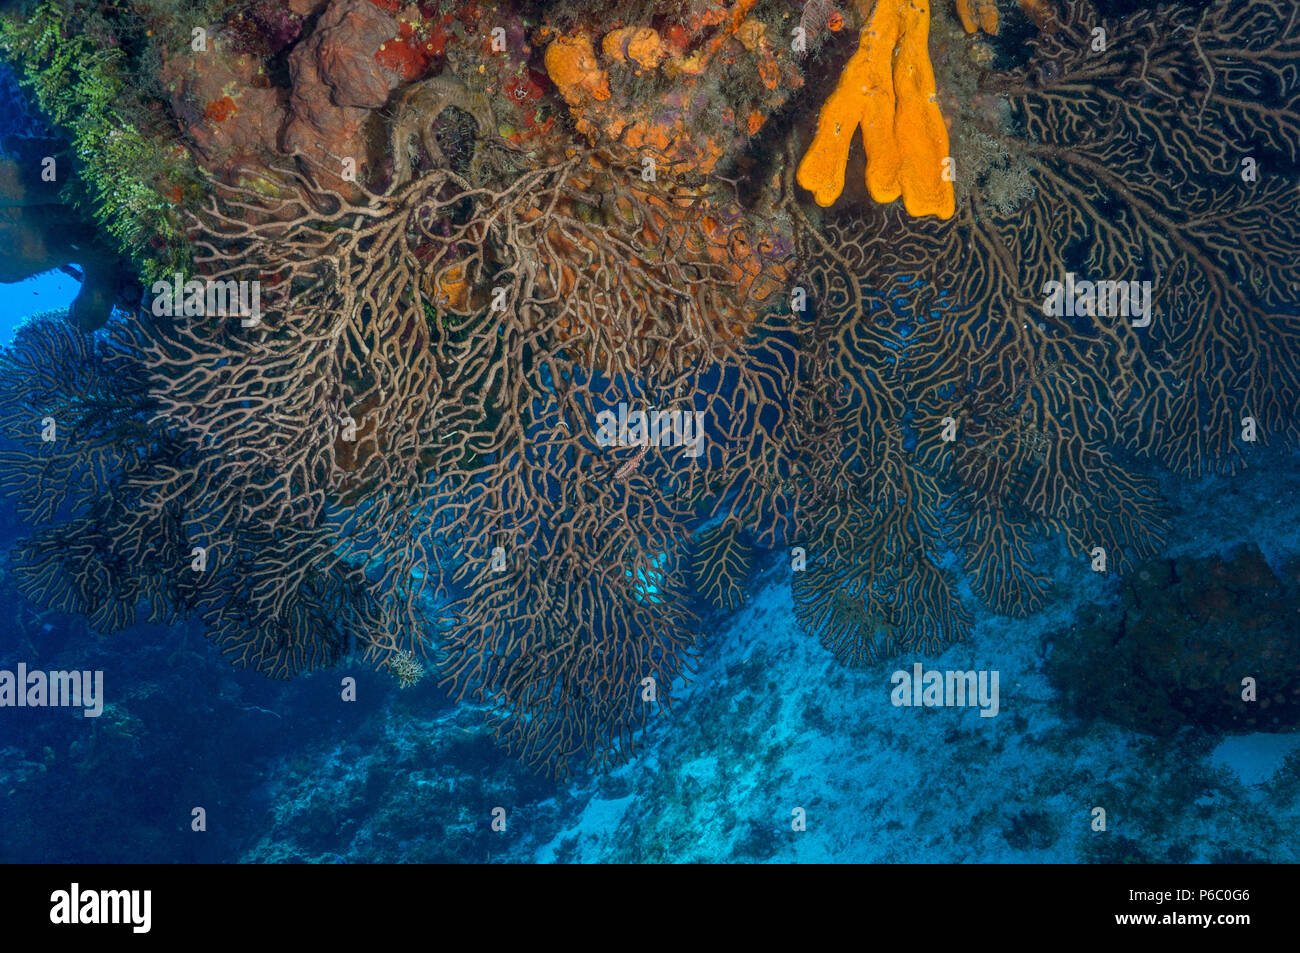 Reef Scene, deepwater sea fan Stock Photo